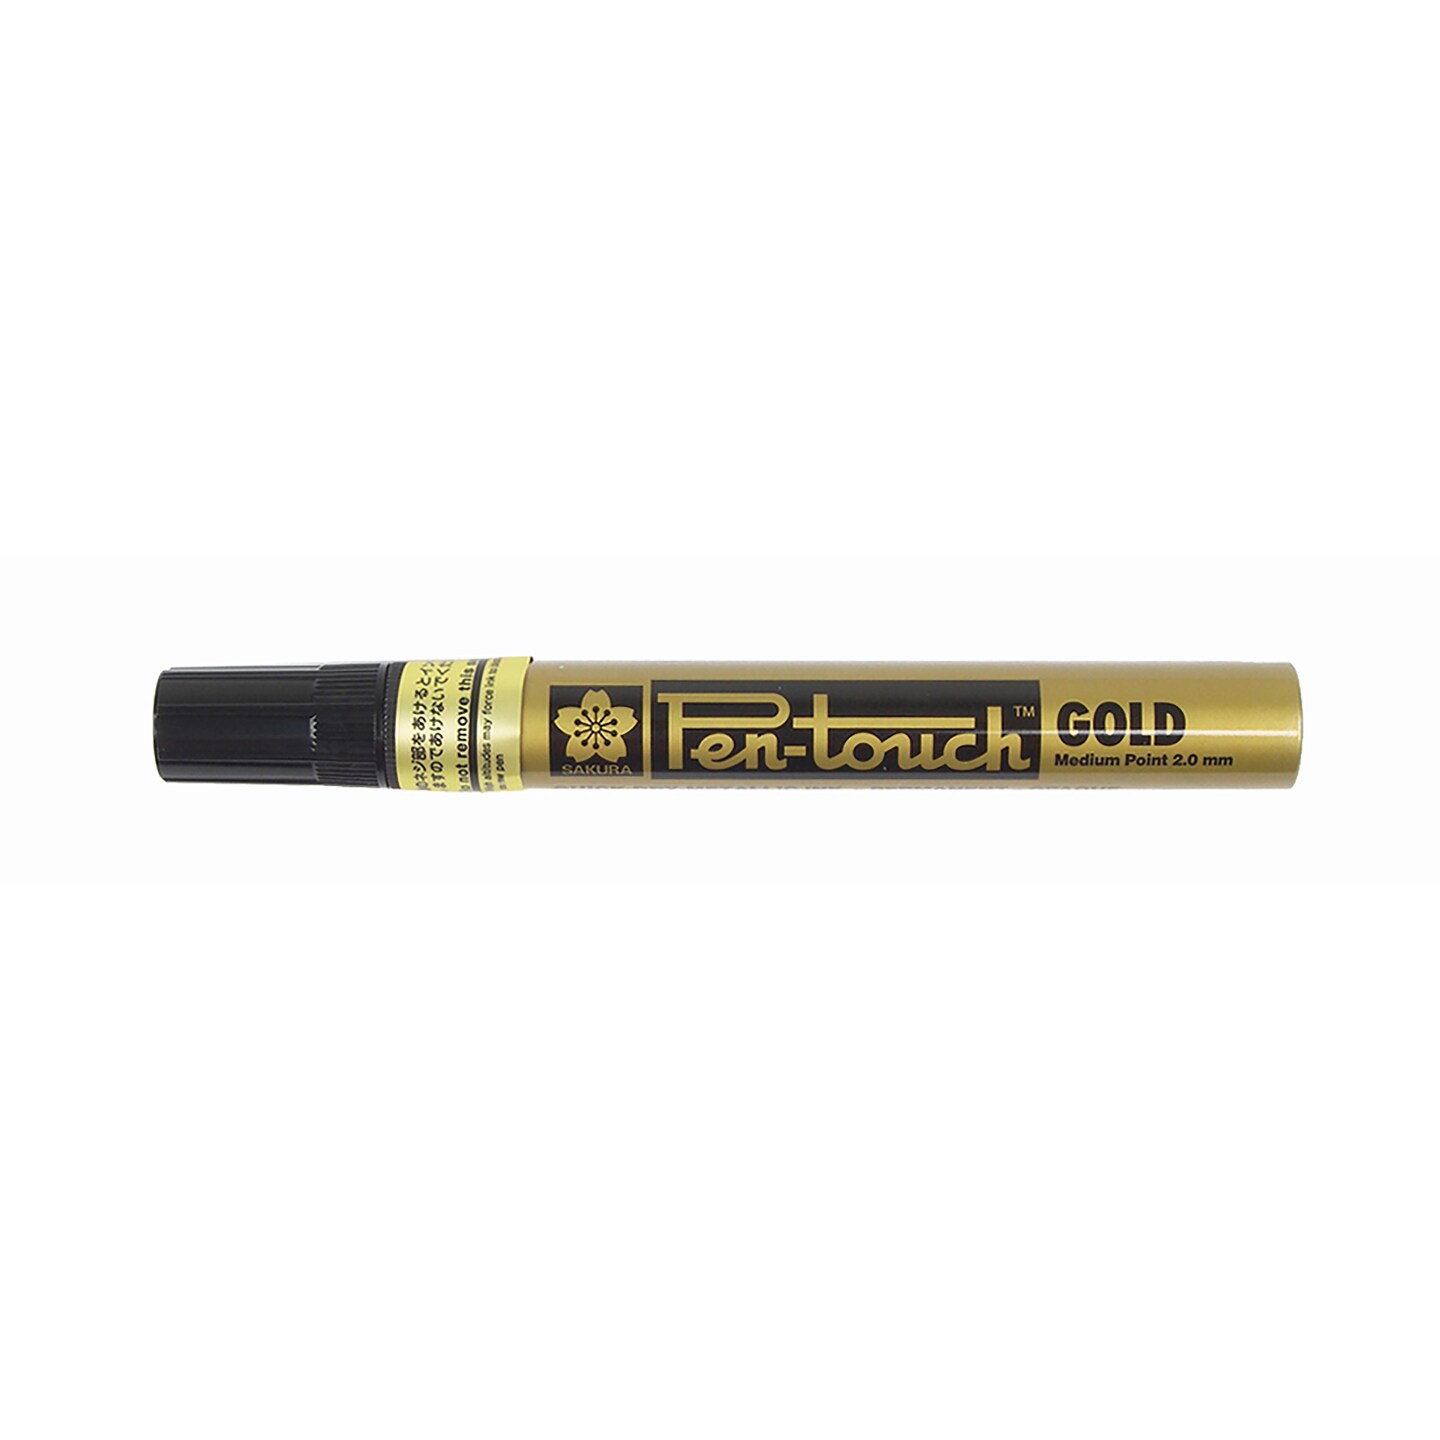 Pen-Touch Medium Point 2.0mm Gold